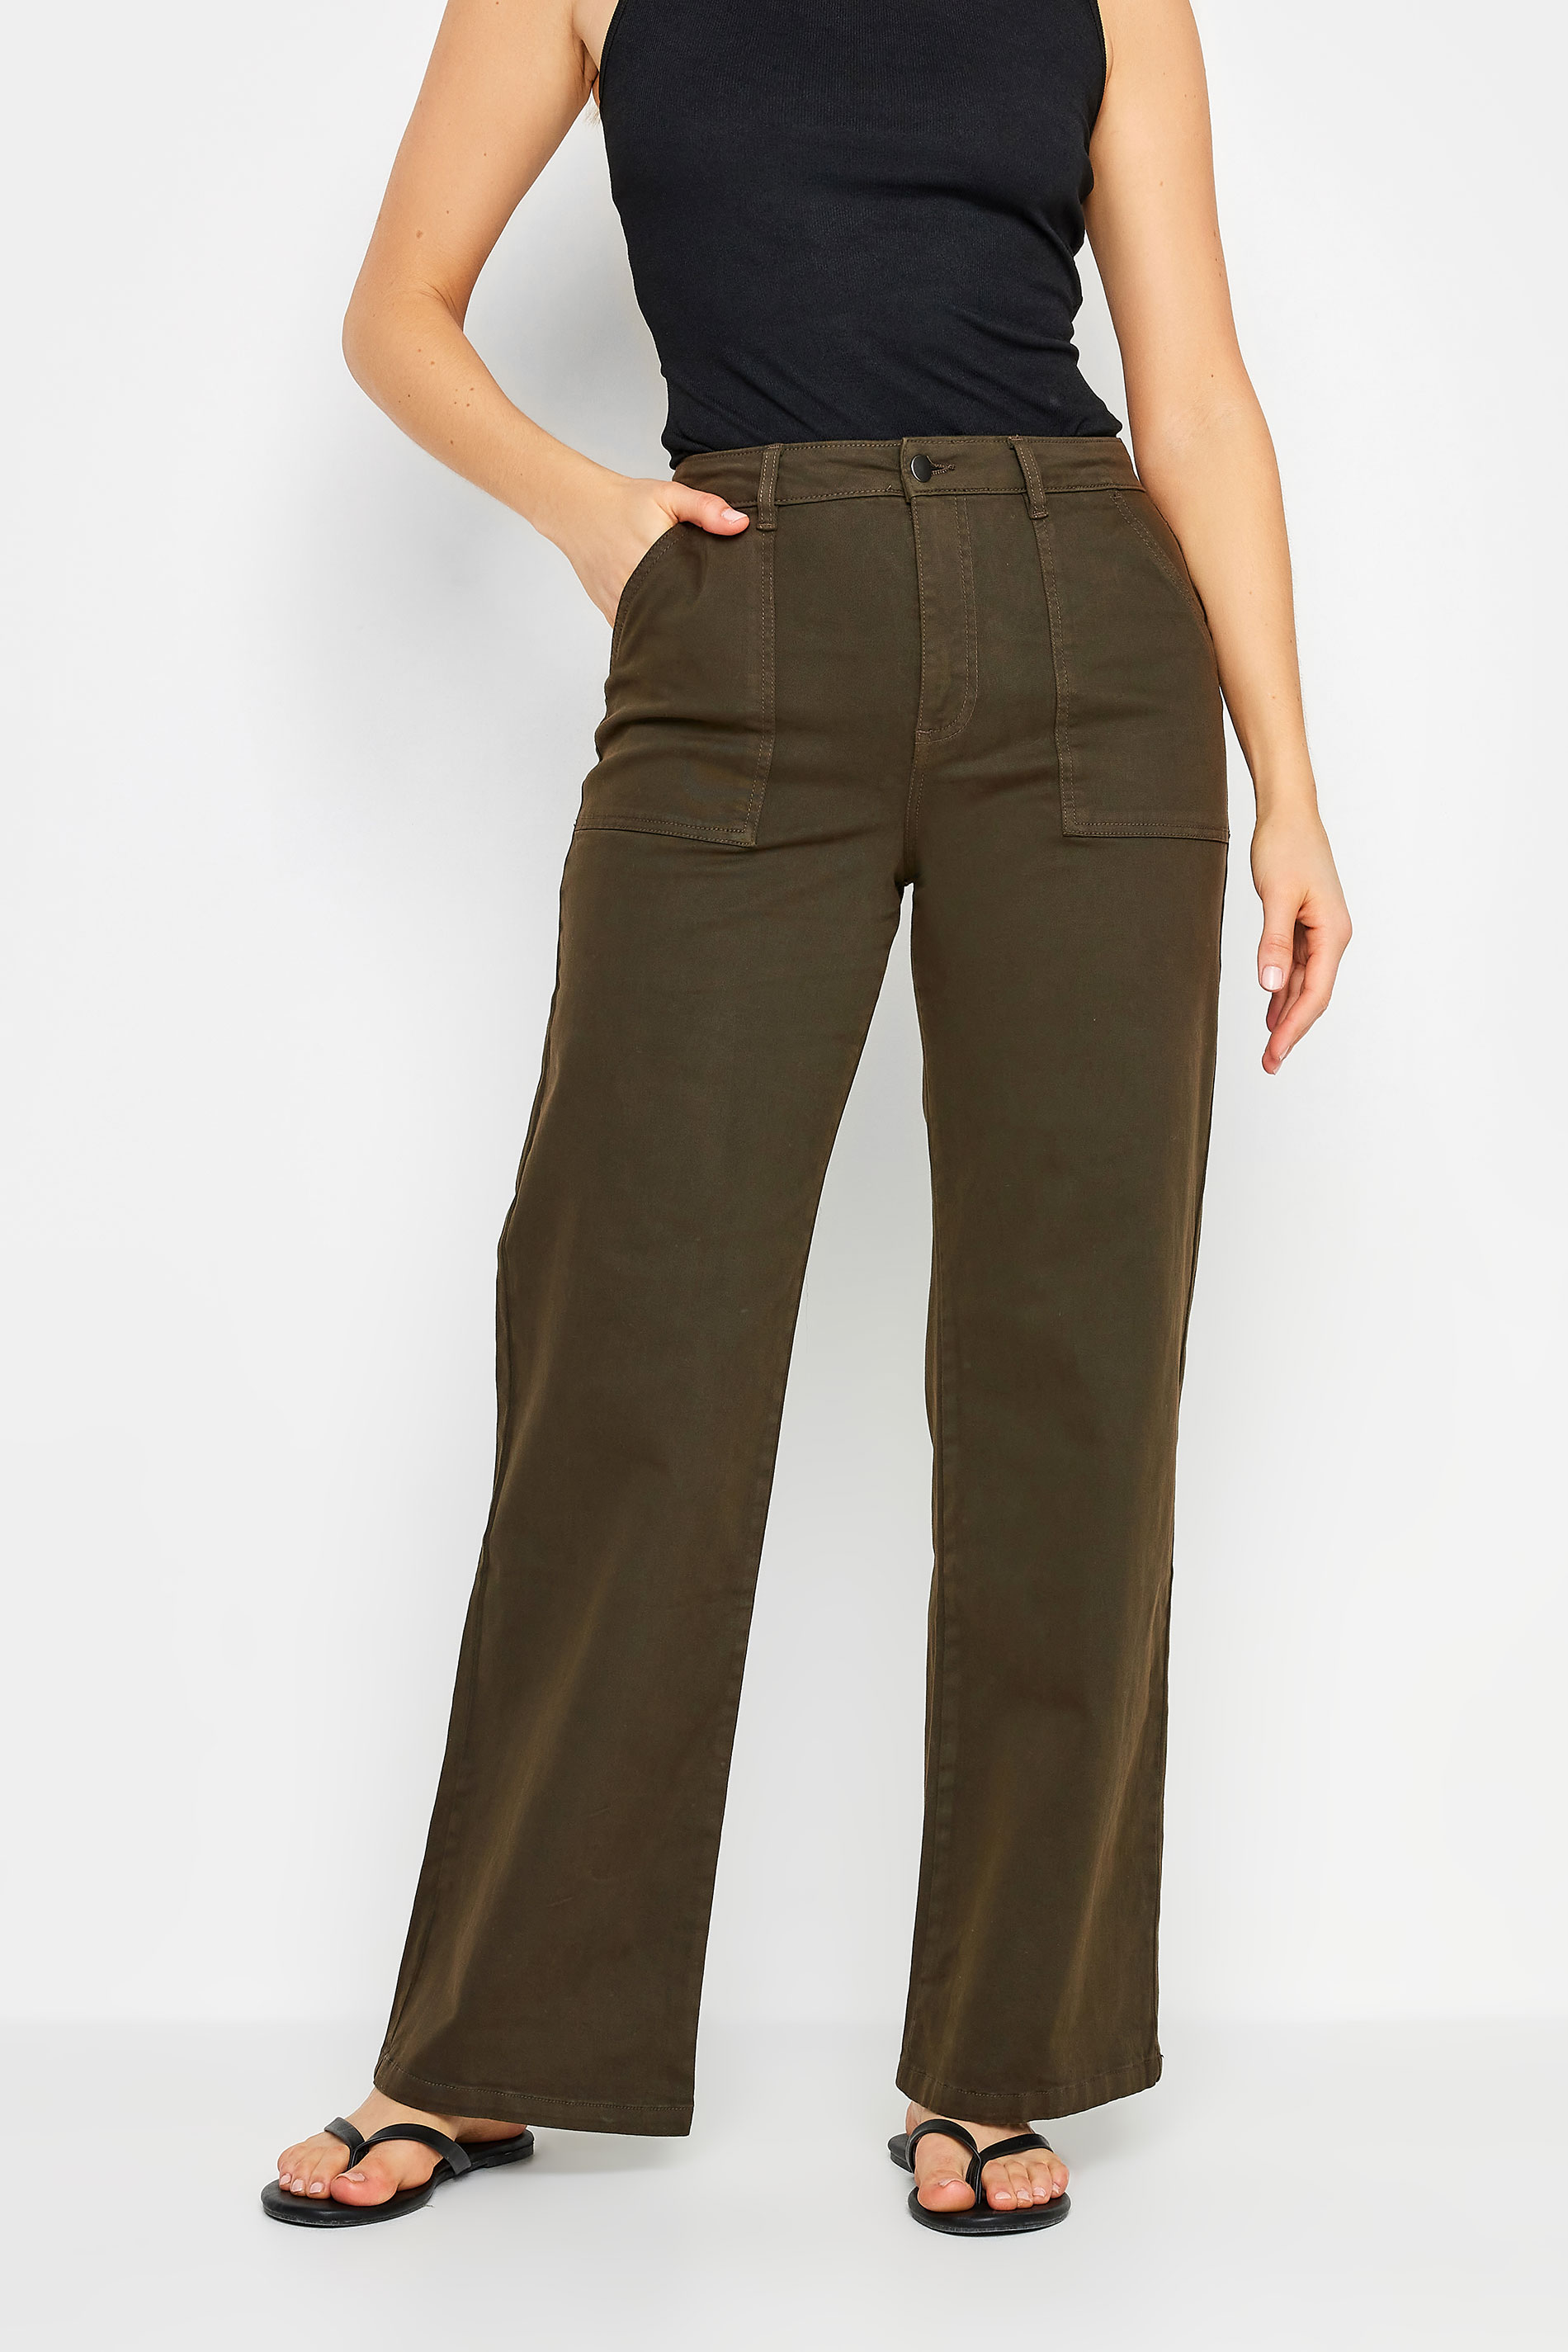 LTS Tall Women's Green Wide Leg Trousers | Long Tall Sally 2